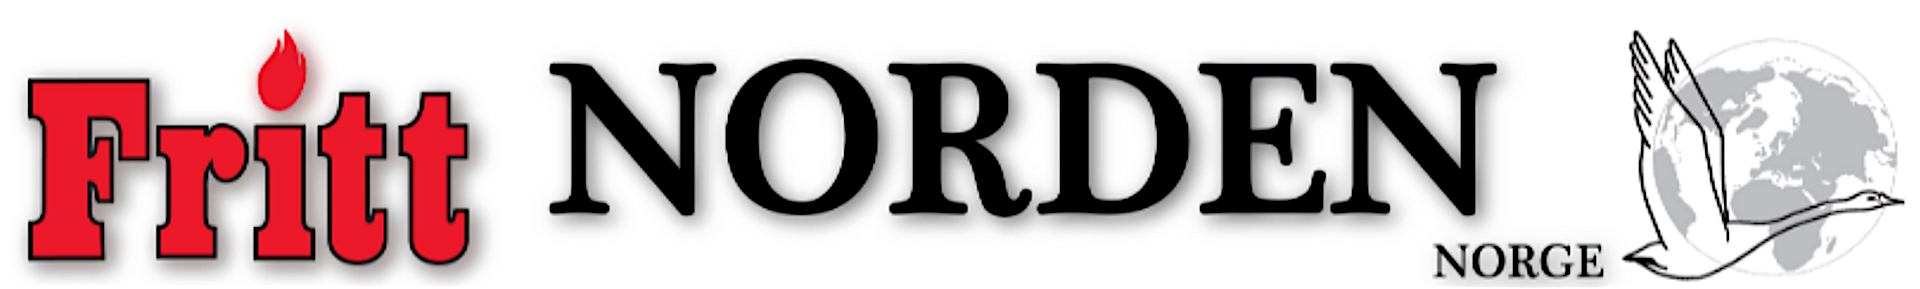 Fritt Norden logo.